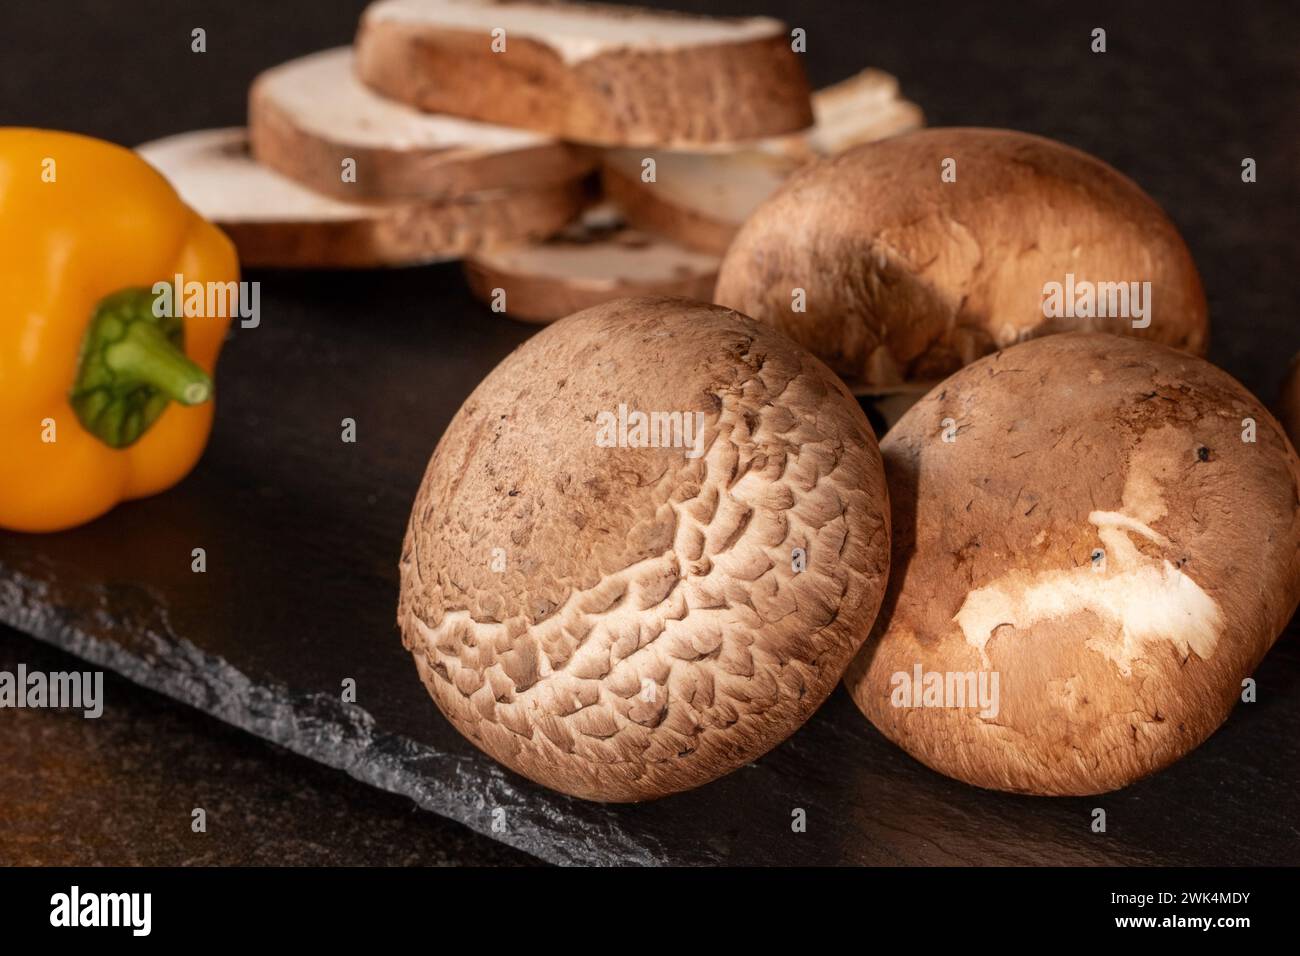 Nahaufnahme frischer ganzer und geschnittener Pilze auf dunklem Hintergrund, perfekt für kulinarische Zutaten und Ernährungskonzepte. Qualitativ hochwertige Bilder Stockfoto